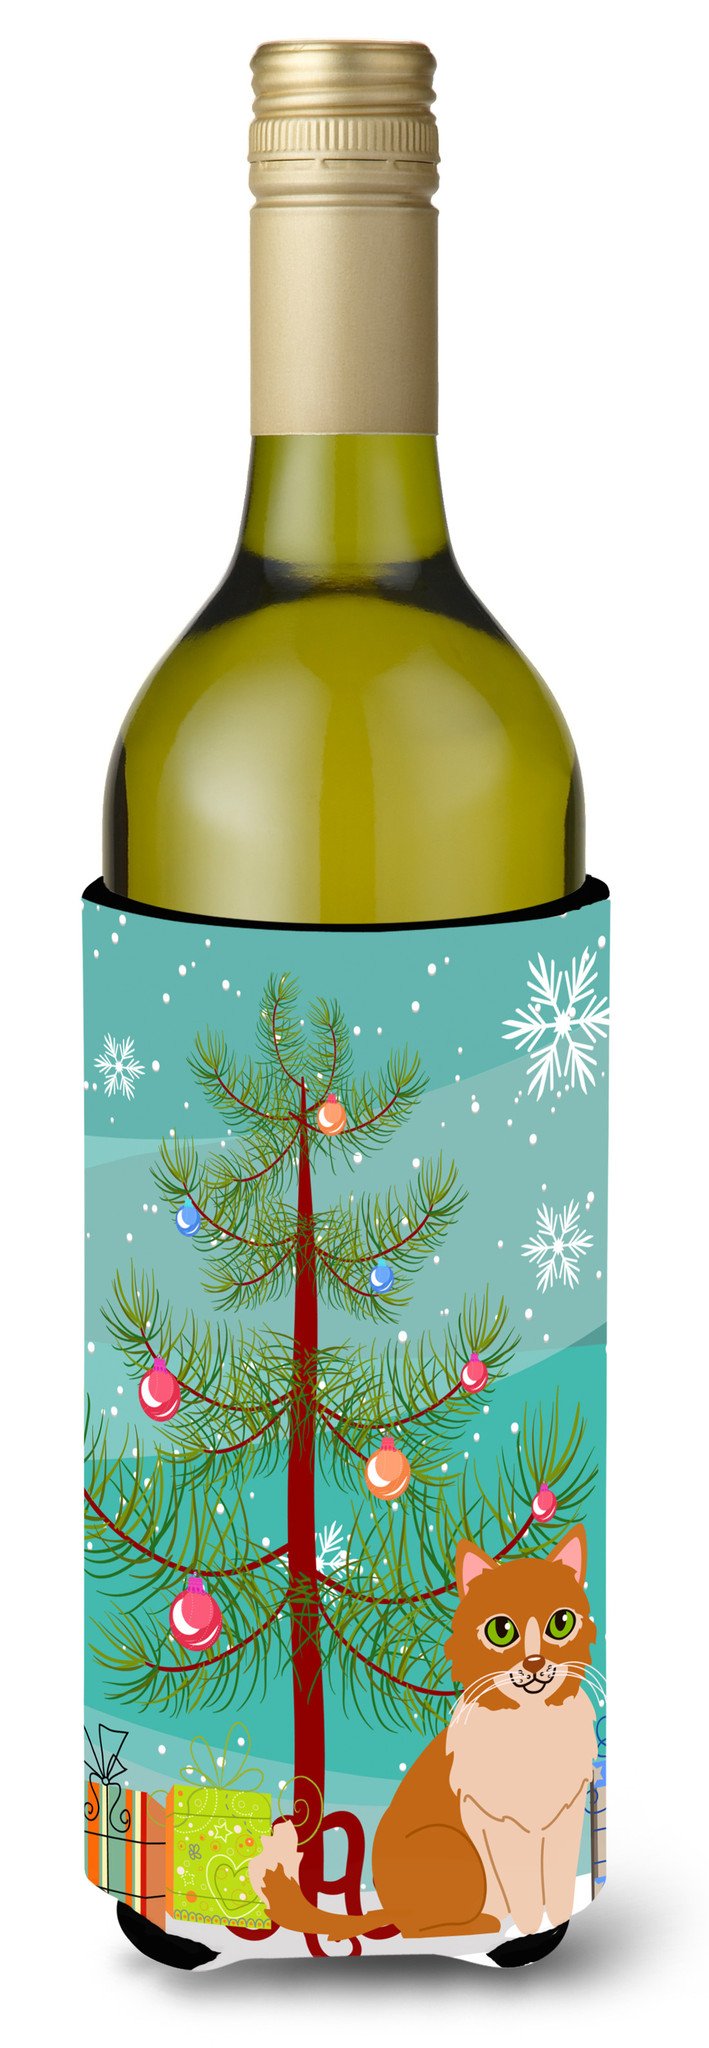 Merry Christmas Tree Ural Rex Cat Wine Bottle Beverge Insulator Hugger BB4435LITERK by Caroline's Treasures